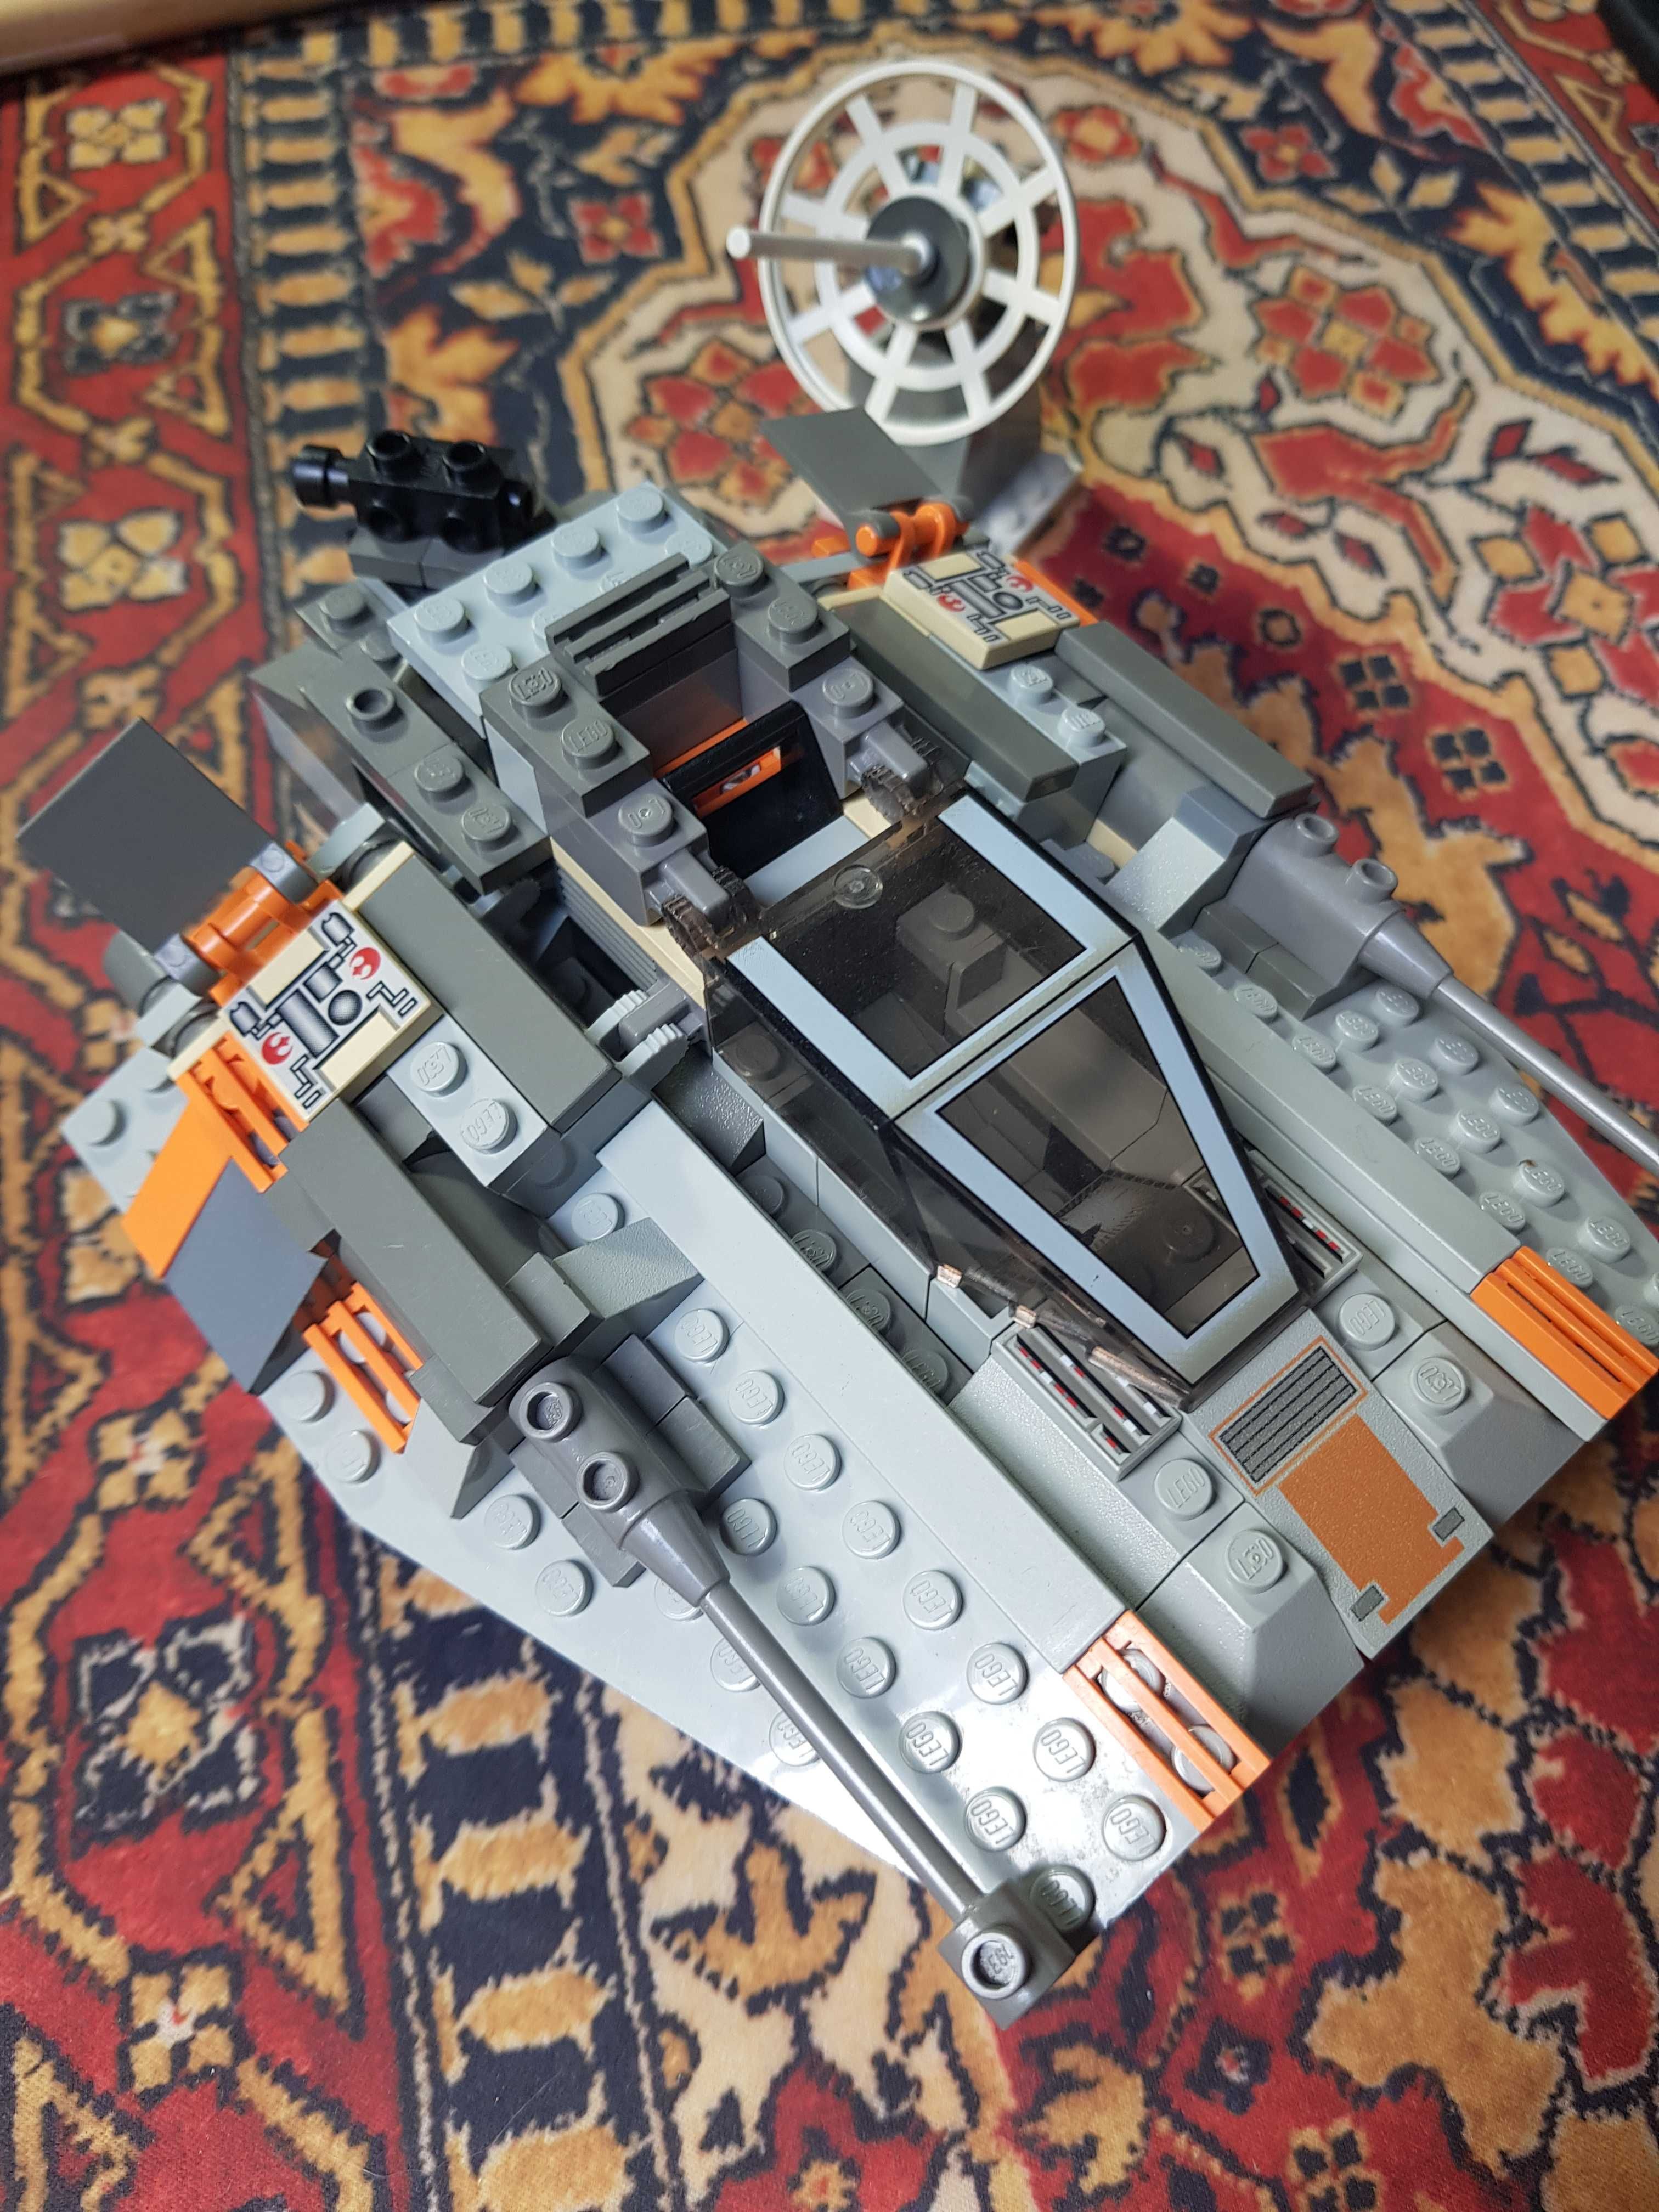 Lego Star Wars 7130 Snowspeeder